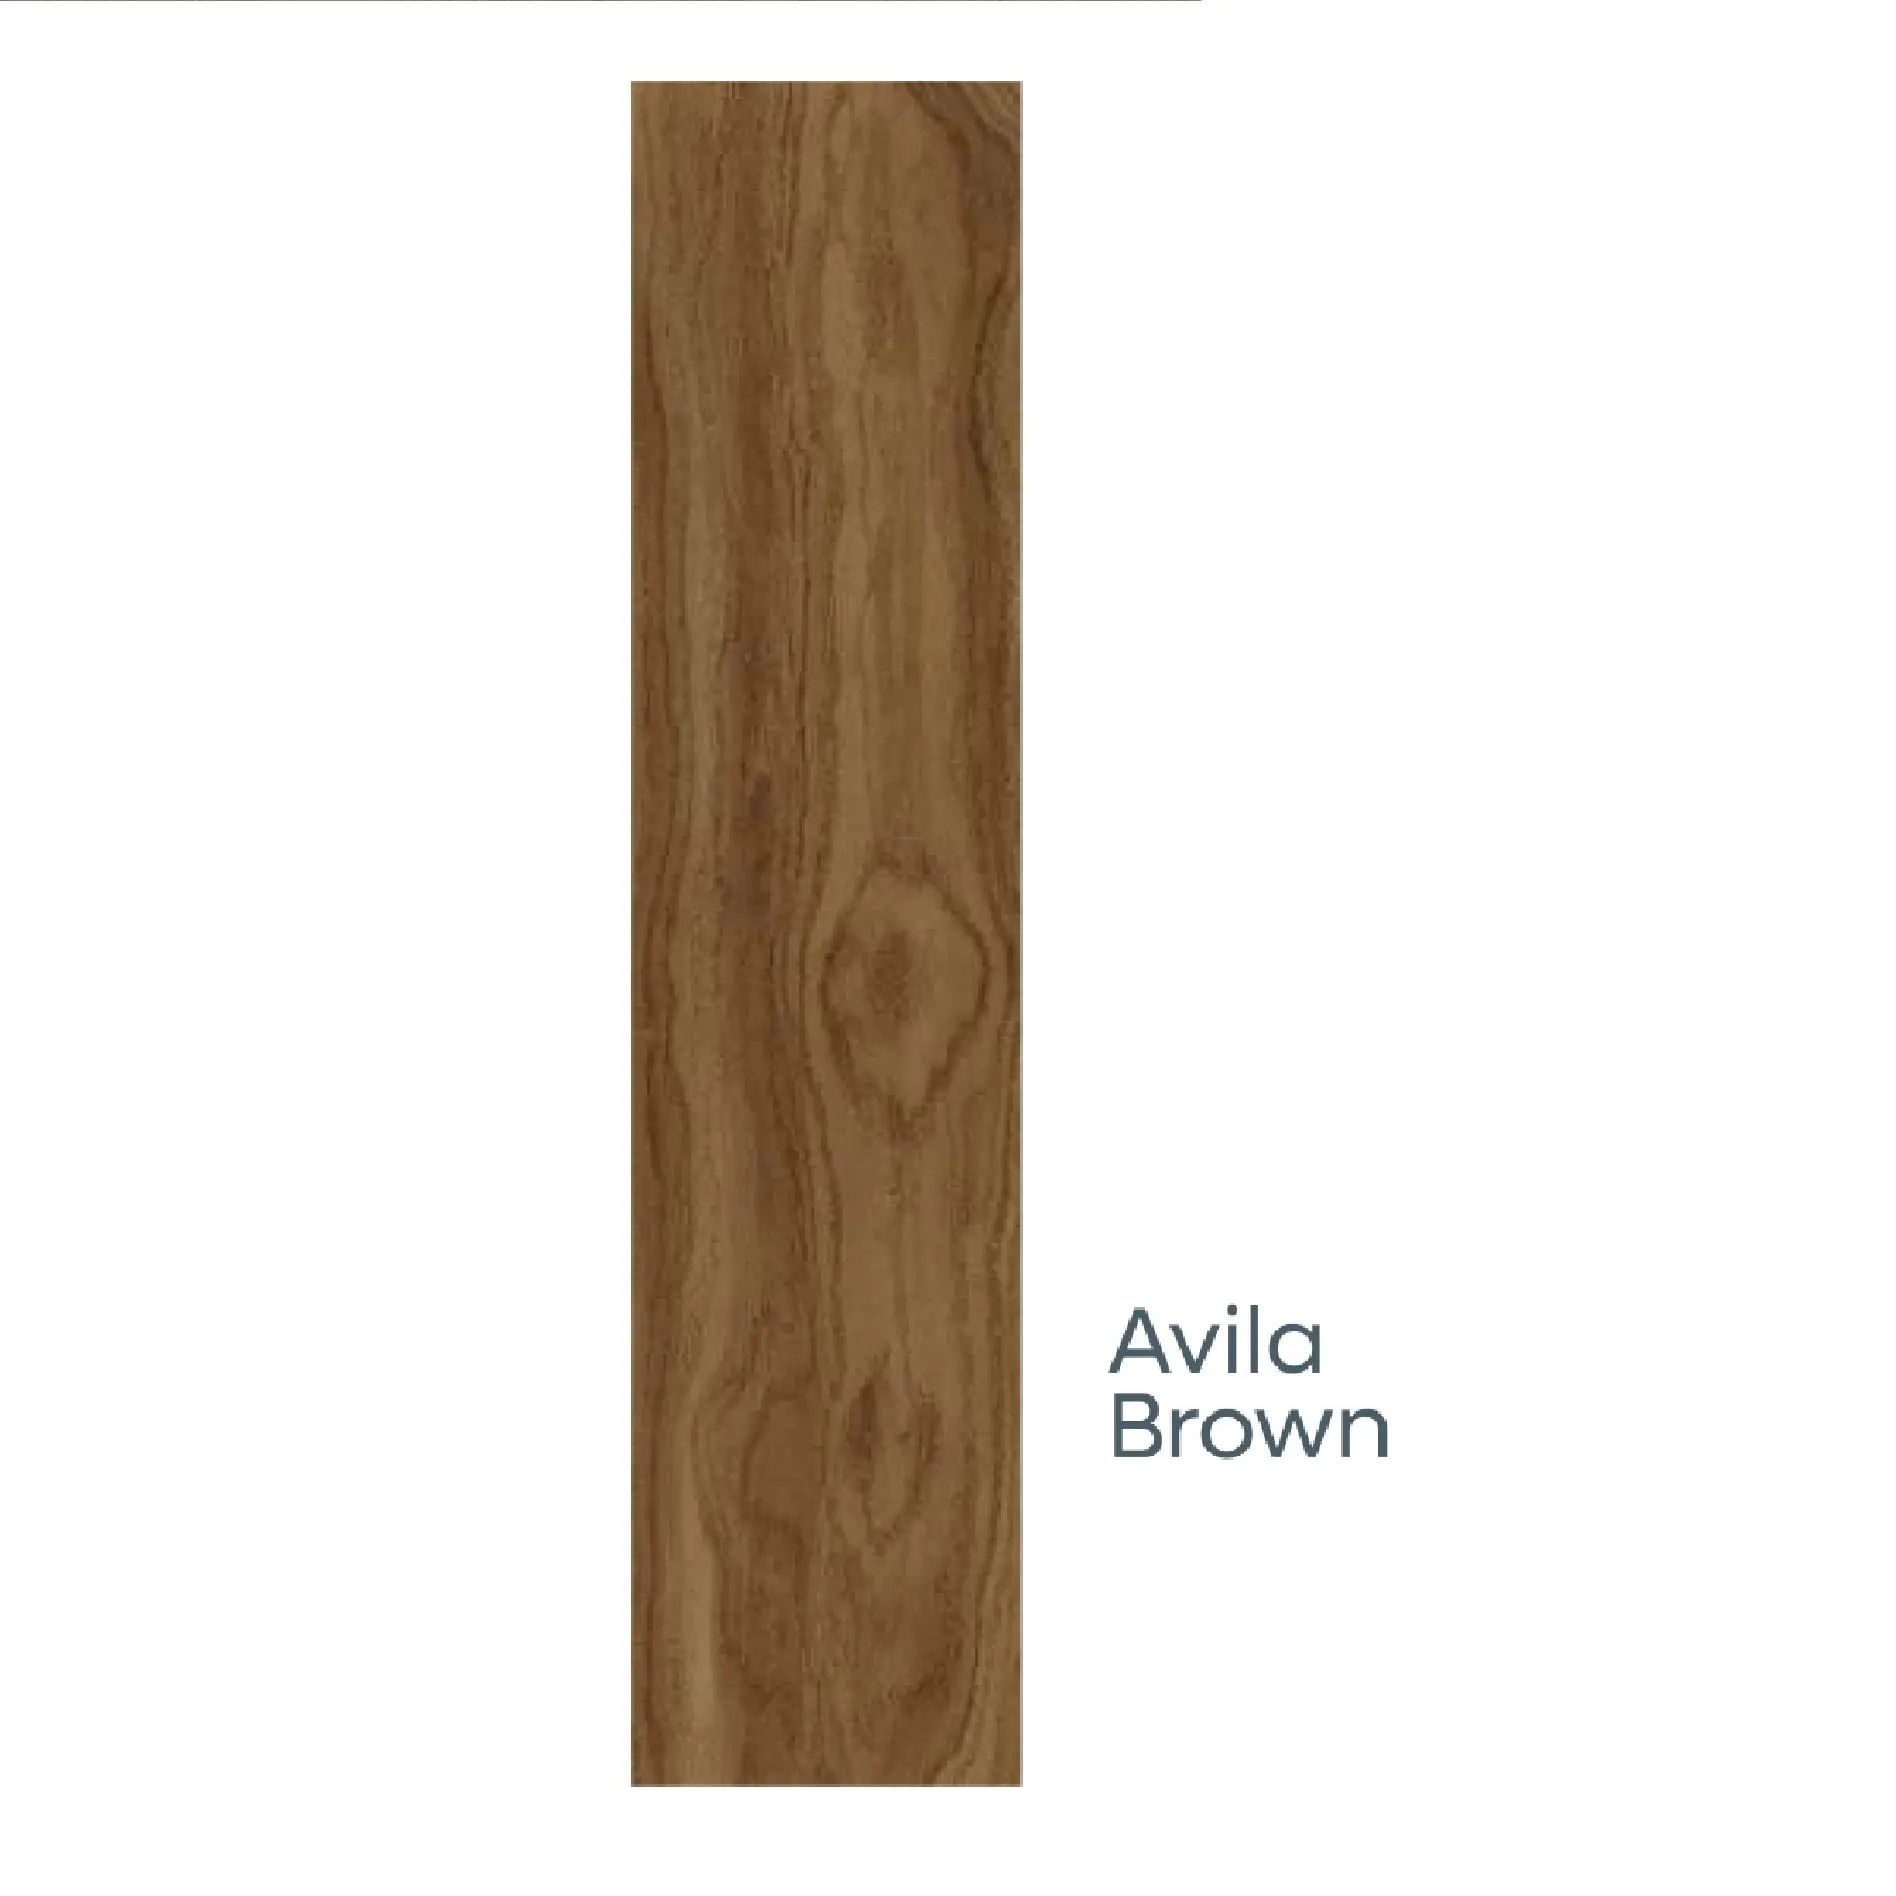 200x1200mm Avila Brown Porzellan Holz dielen fliesen für Böden und Wände in satin ierten und rustikalen Matt oberflächen fliesen von Novac Ceramic